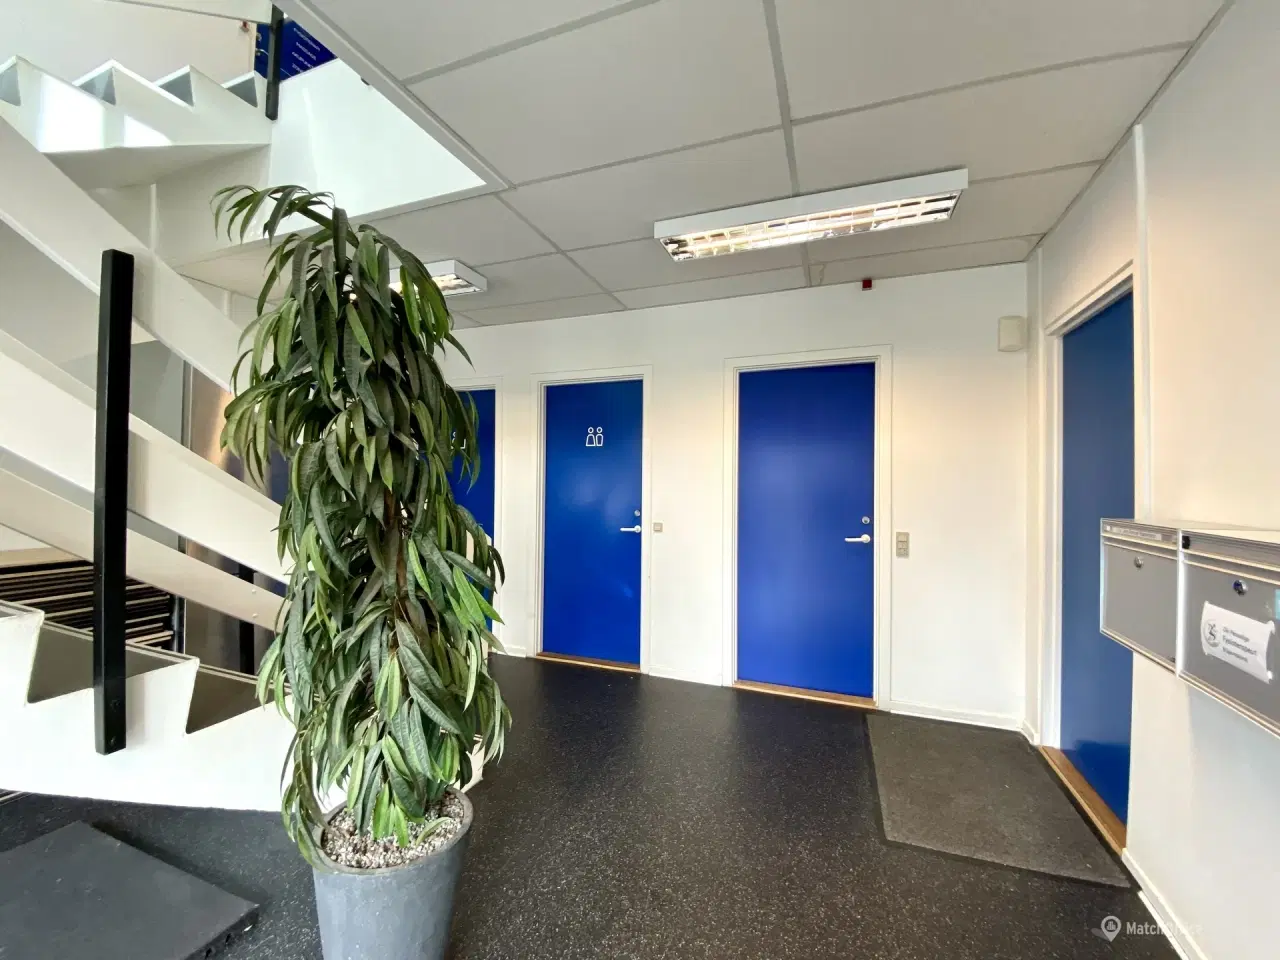 Billede 13 - 150 m² kontorlokaler i efterspurgt erhvervsområde i Odense S